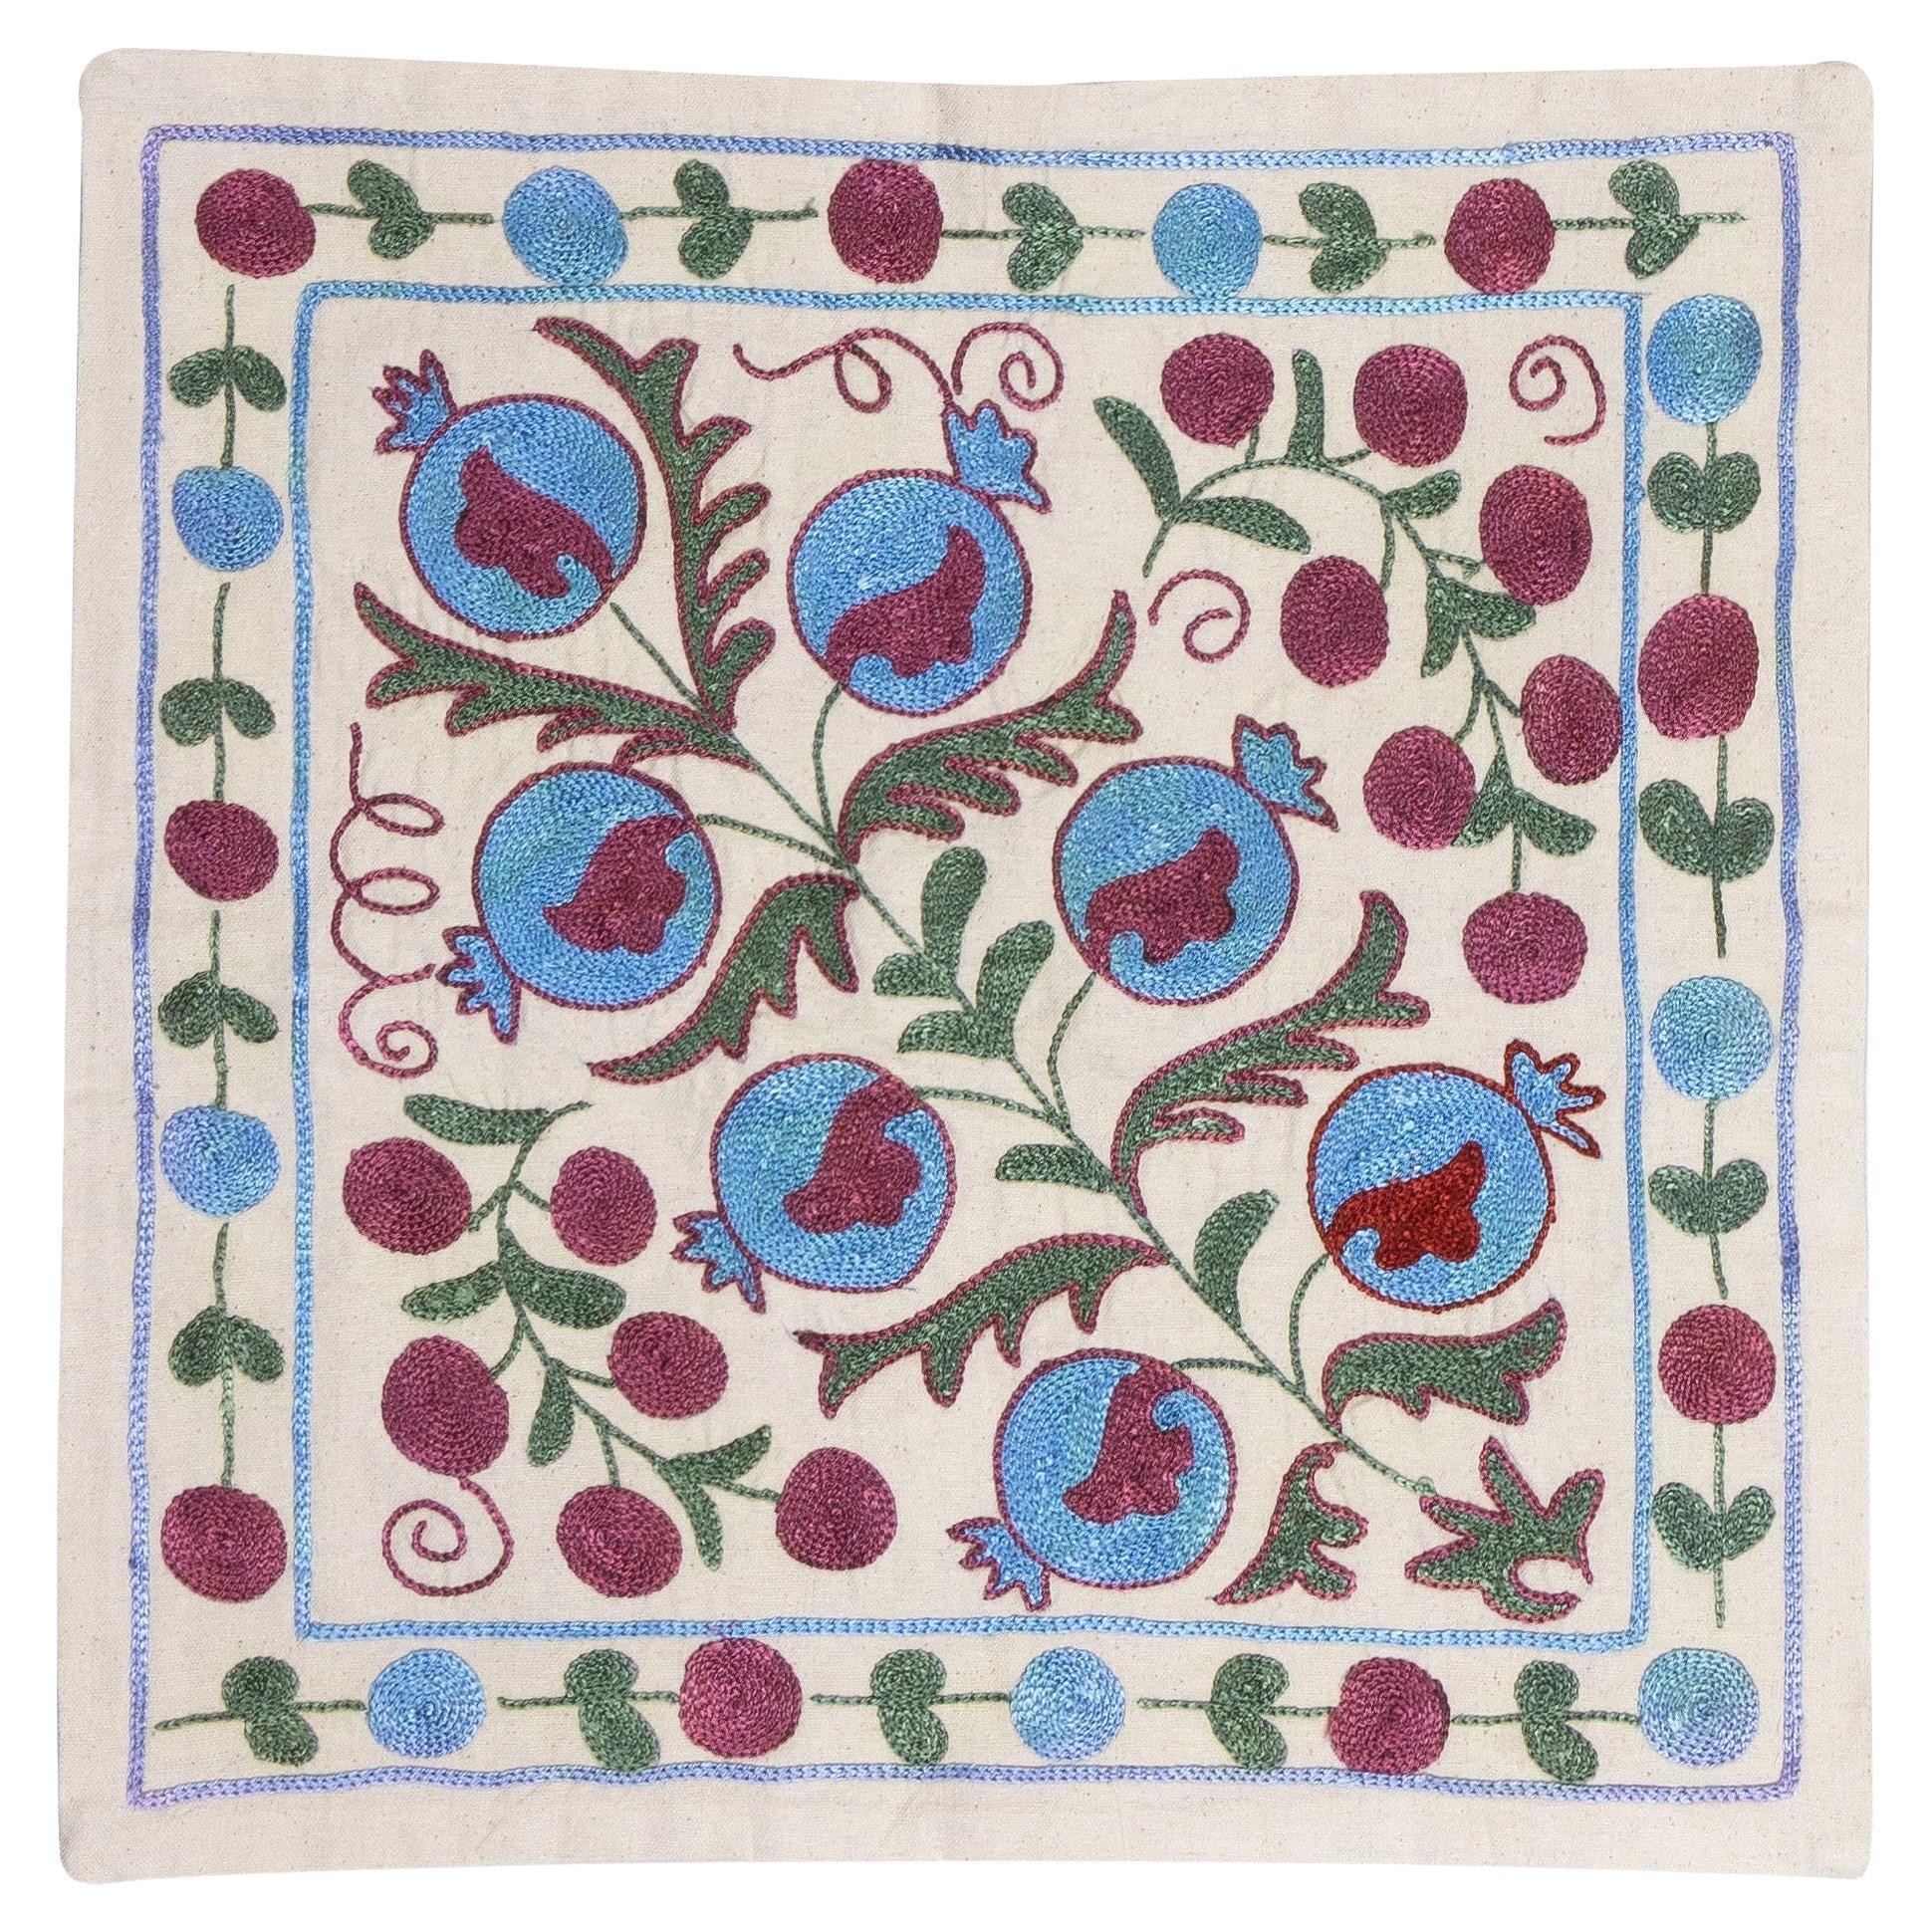 18 "x18" Silk Embroidery Suzani Pillowcase, Pomegranate Tree Design Cushion Cover (housse de coussin à motif de grenadier) en vente